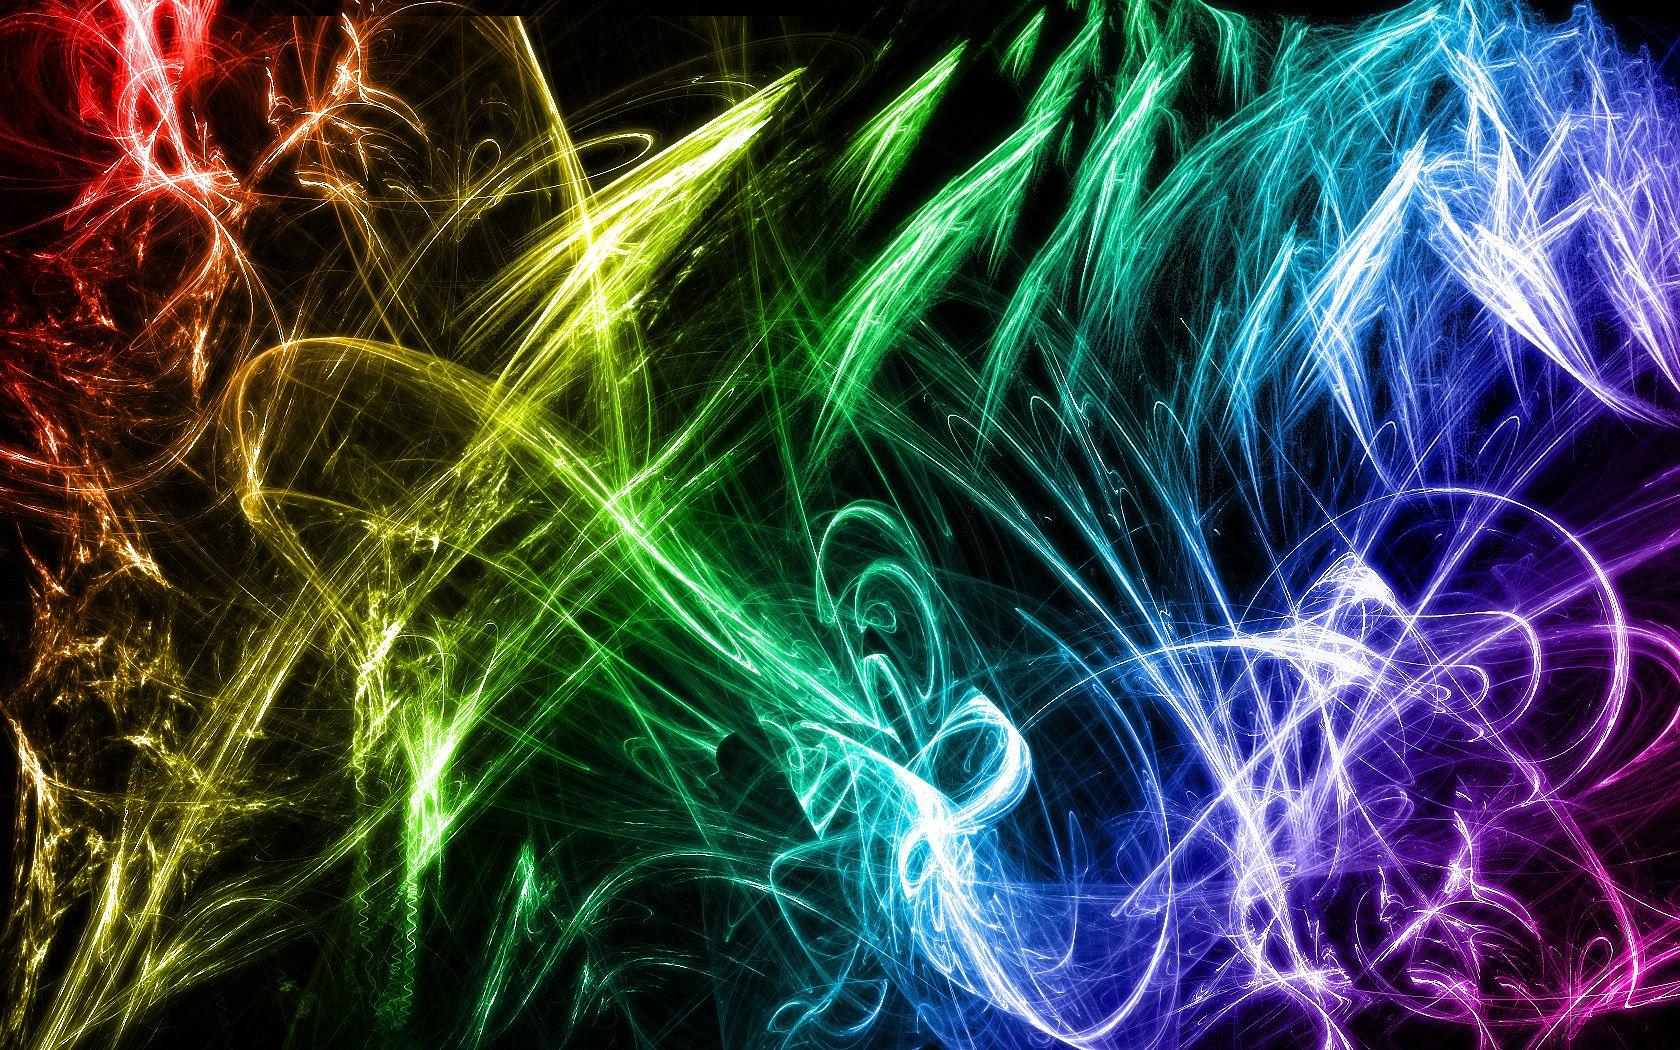 1680x1050 Tải xuống miễn phí Mọi thứ và Mọi thứ hình ảnh Neon Rainbow Wallpaper Hình nền HD [1680x1050] cho Máy tính để bàn, Di động & Máy tính bảng của bạn.  Khám phá các thiết kế nền Neon tuyệt vời.  Thiết kế nền Neon tuyệt vời, Neon tuyệt vời